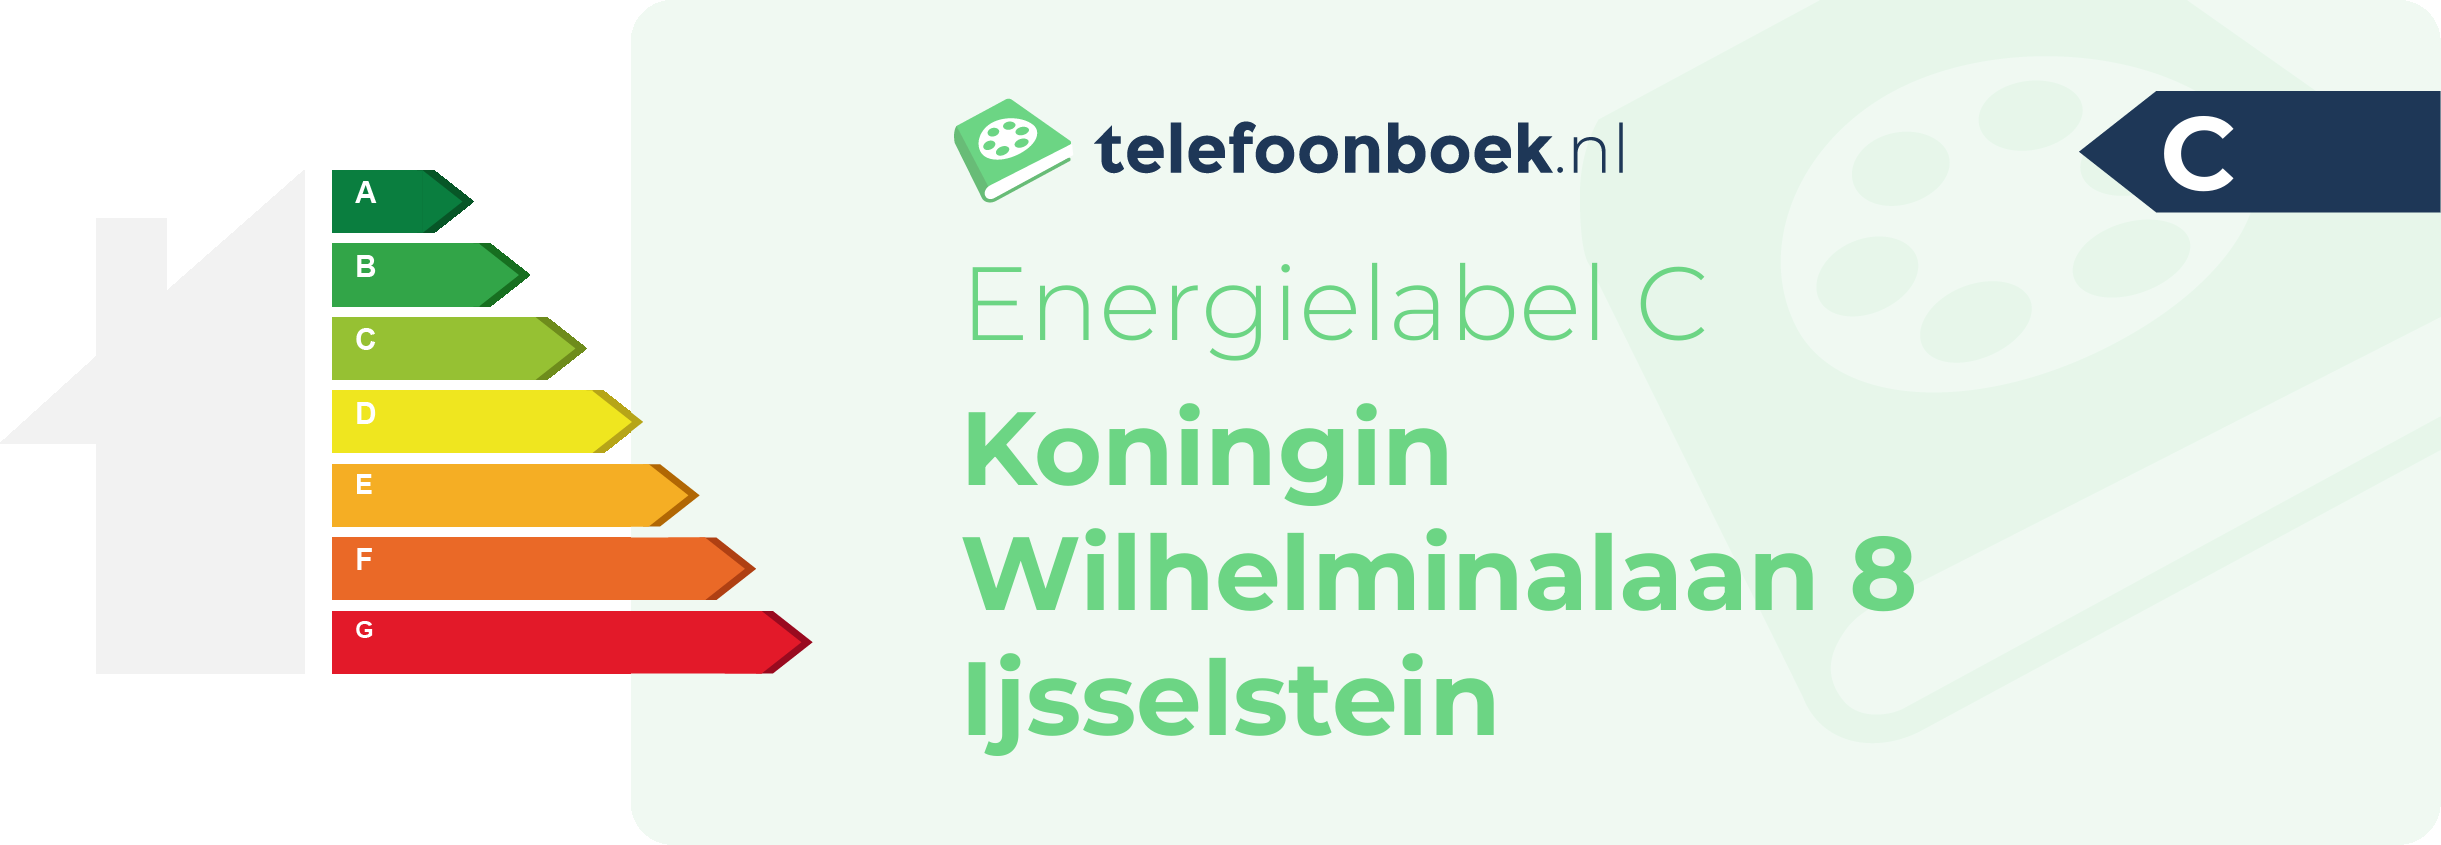 Energielabel Koningin Wilhelminalaan 8 Ijsselstein